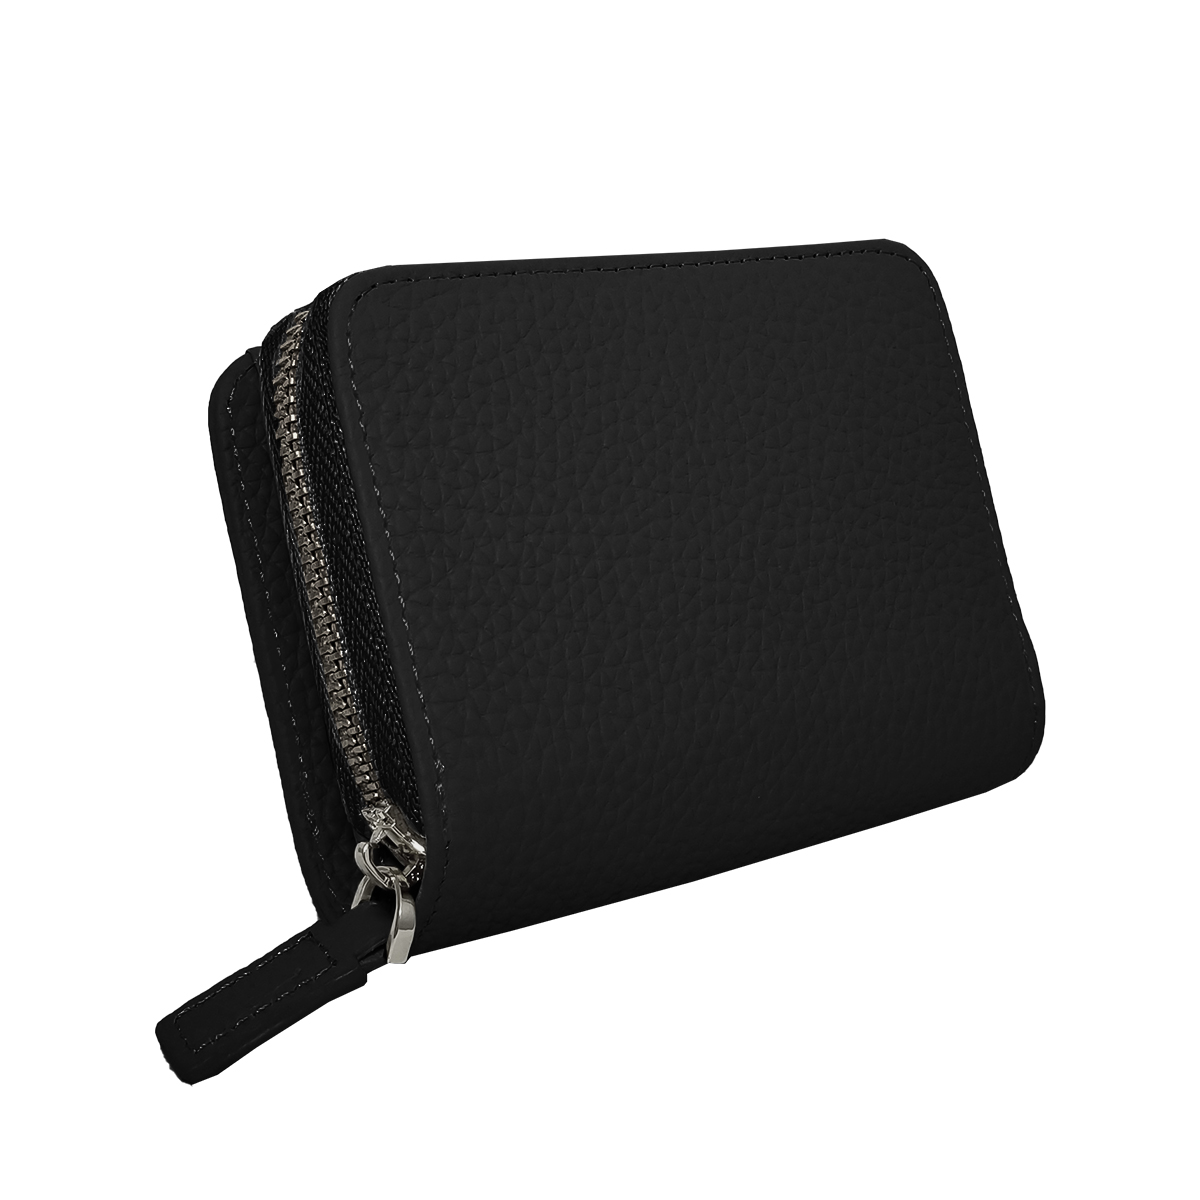 ミニ財布 レディース 本革 二つ折り 使いやすい 財布 小さめ カードケース 磁気防止 スキミング防...